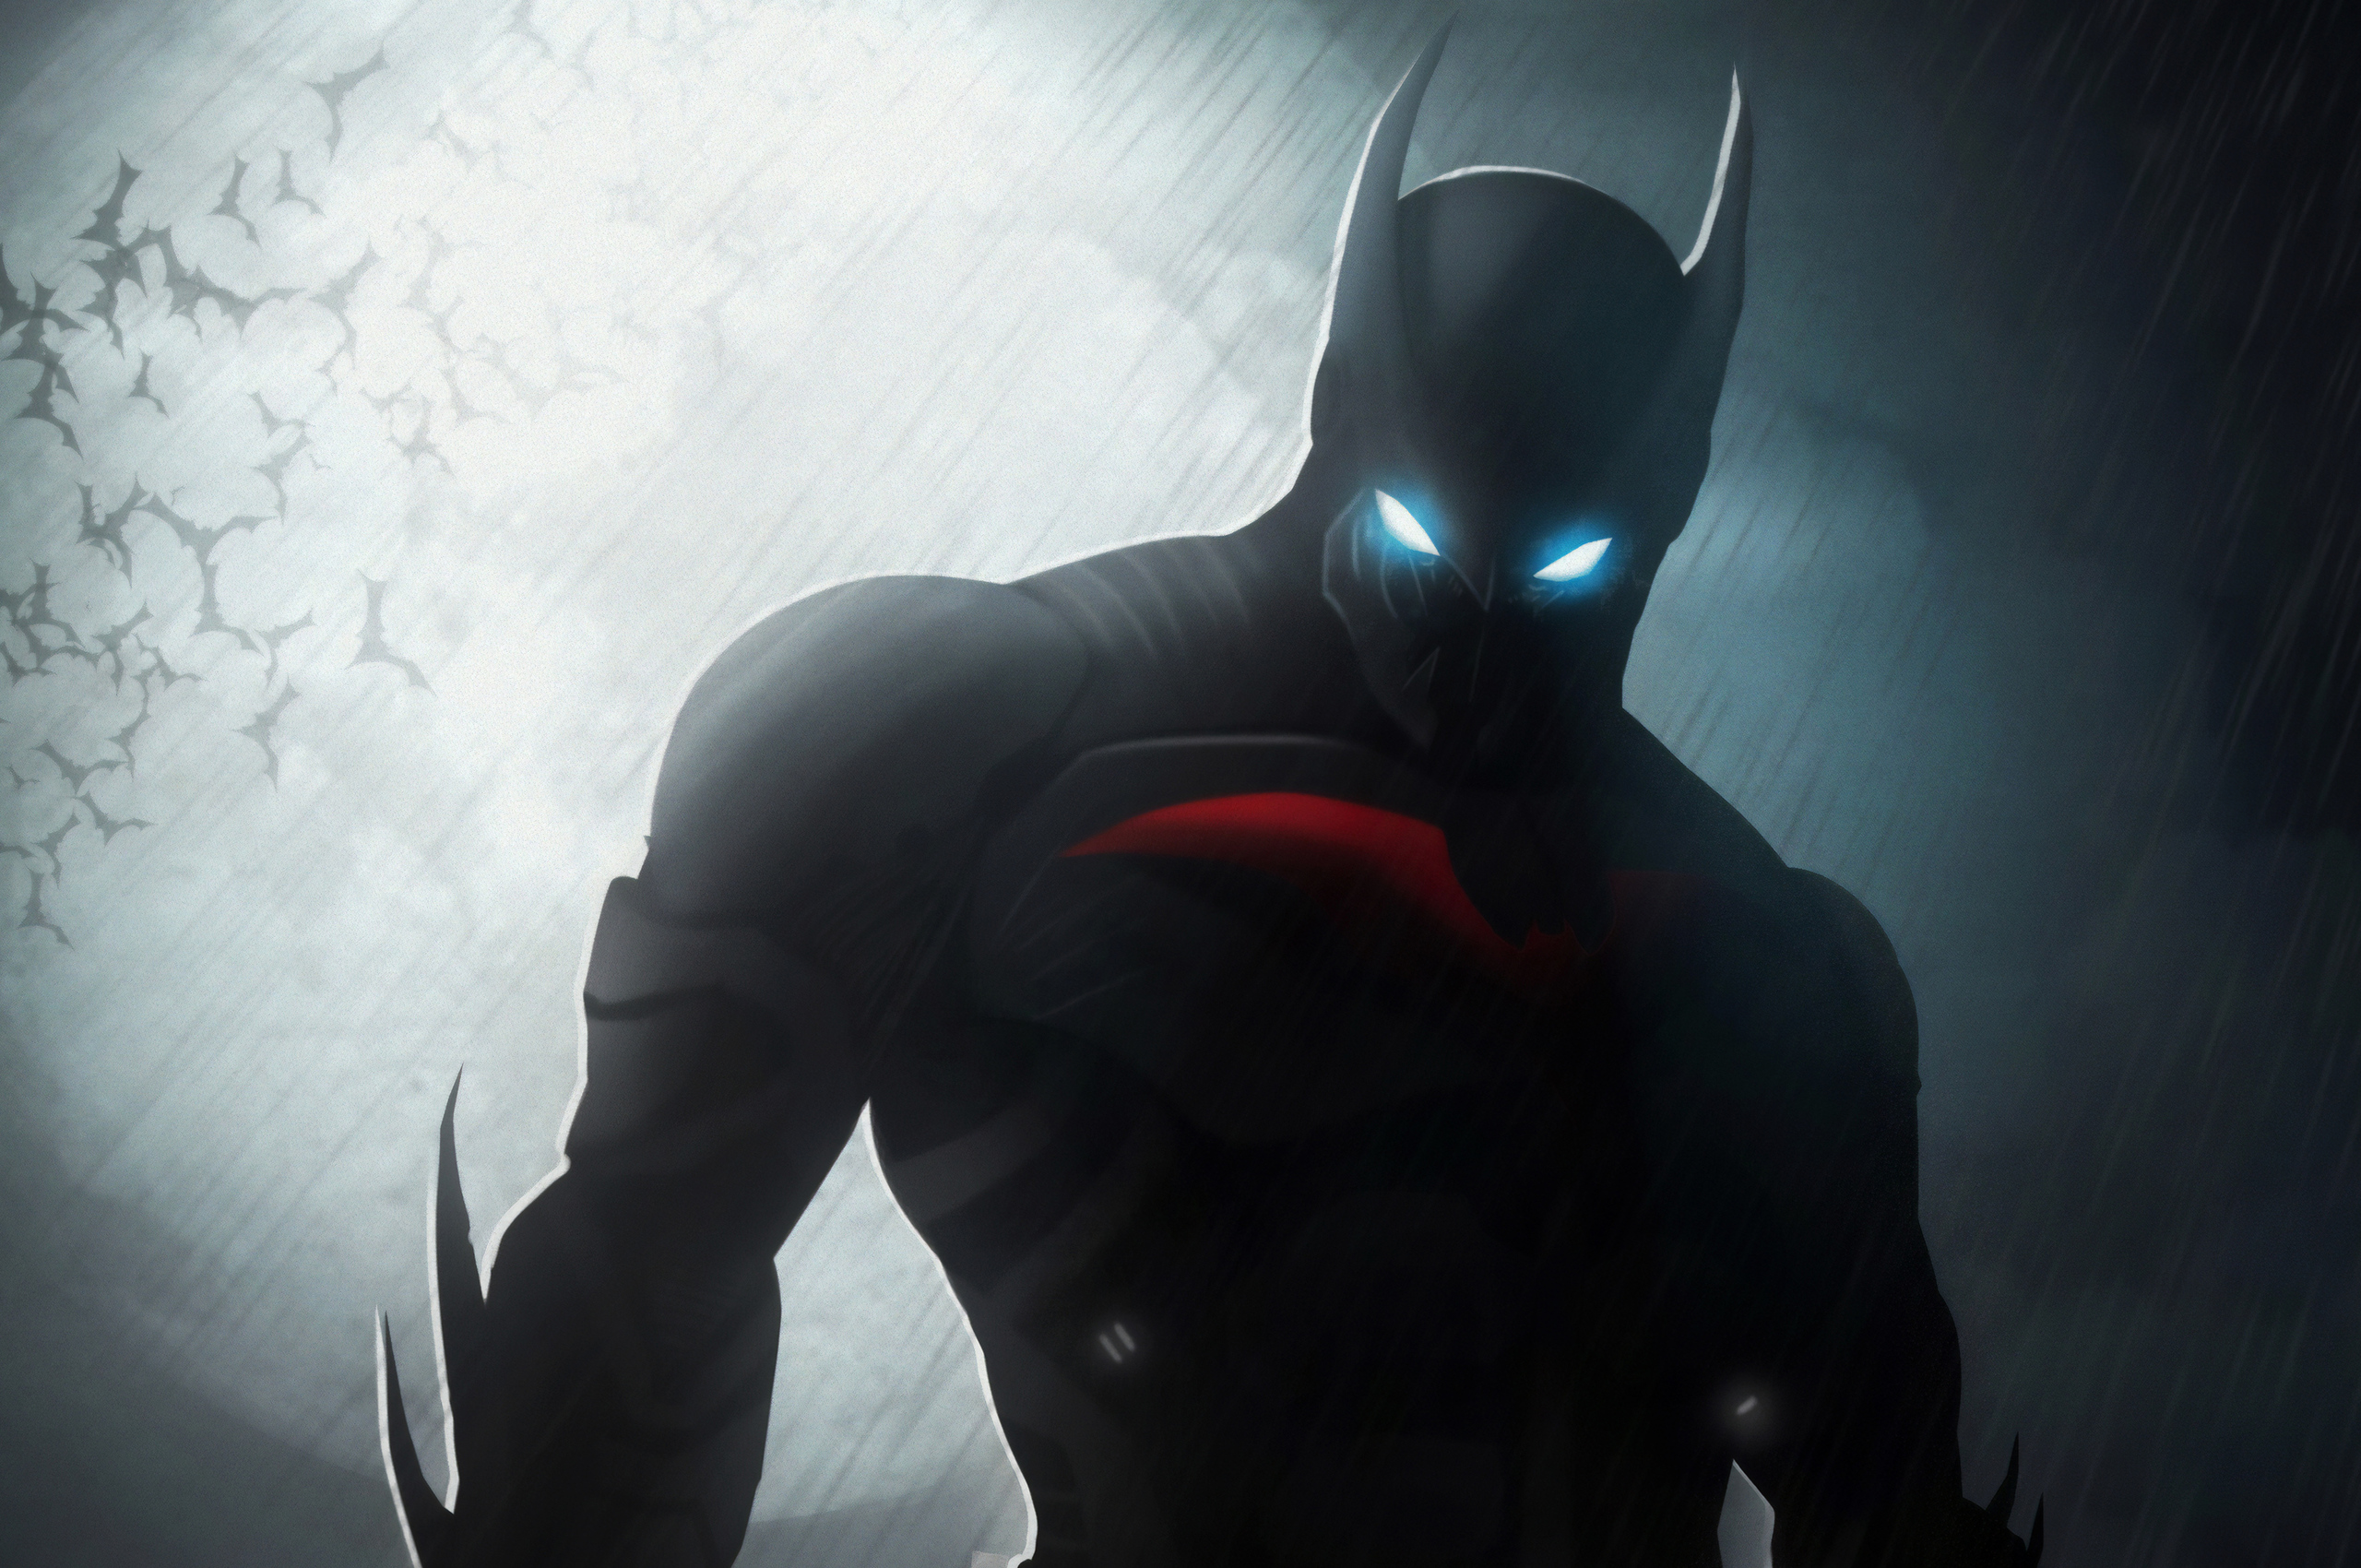 Batman Beyond Art 4k In 2560x1700 Resolution. batman-beyond-art-4k-xu.jpg. 